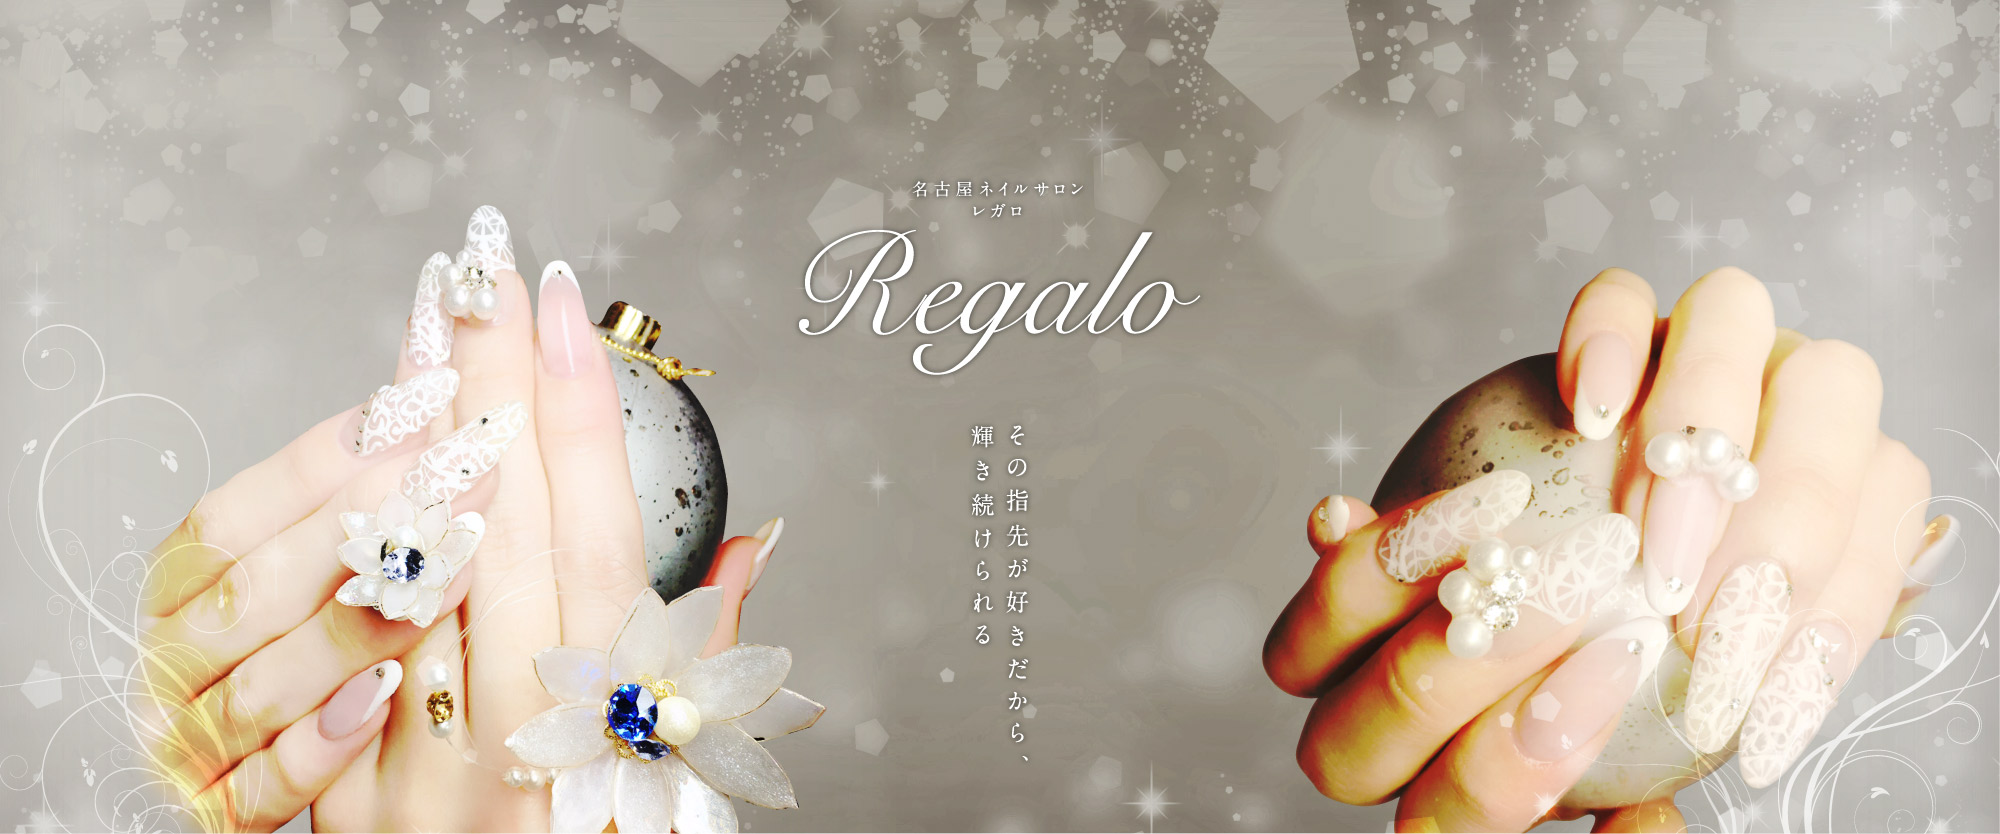 名古屋ネイルサロン レガロ Regalo その指先が好きだから、輝き続けられる